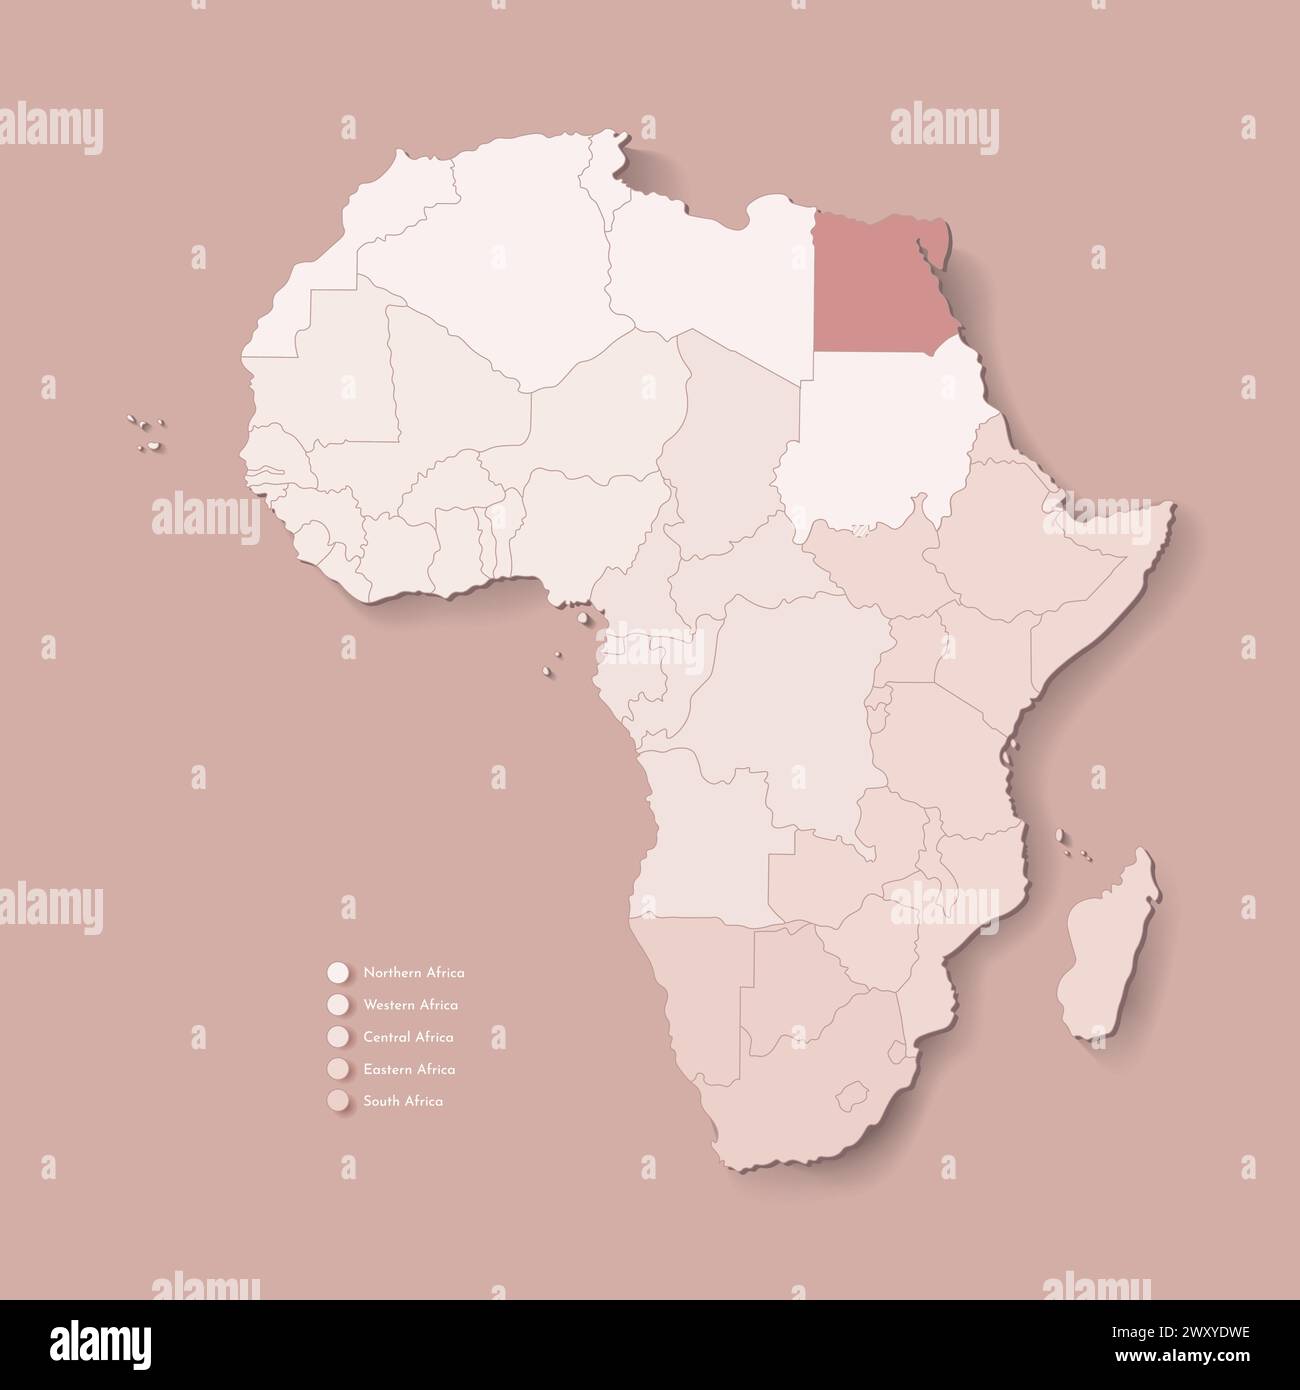 Illustrazione vettoriale con continente africano con confini di tutti gli stati e paese marcato Egitto. Mappa politica di colore marrone con occidentale, sud e. Illustrazione Vettoriale